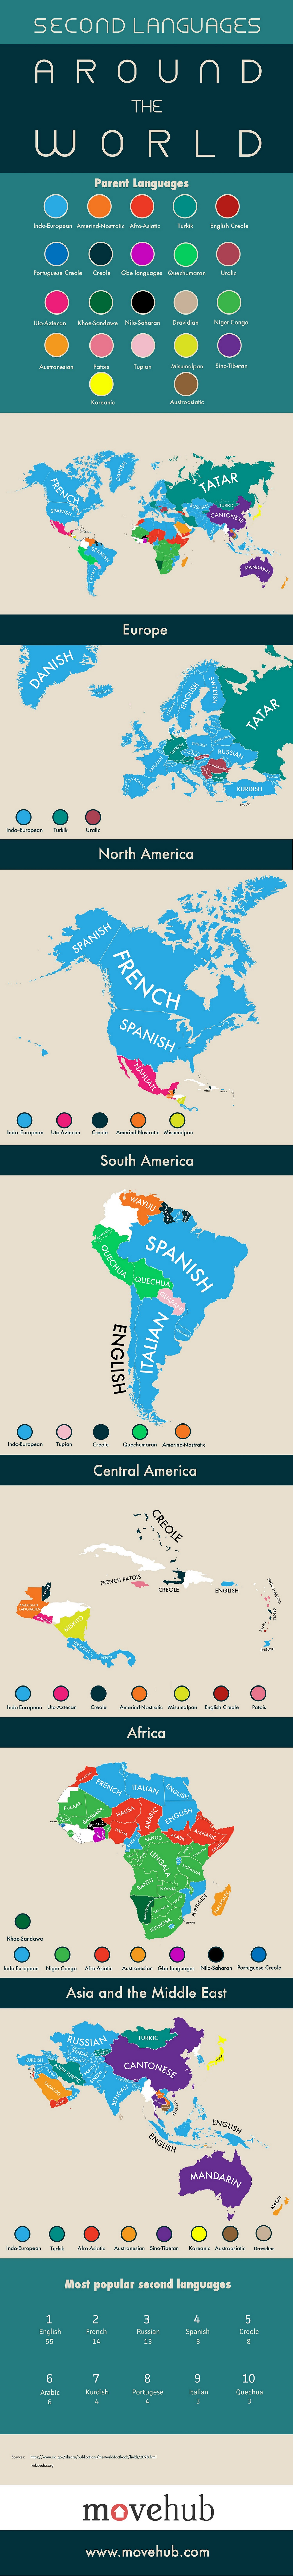 Les deuxièmes langues les plus parlées autour du monde